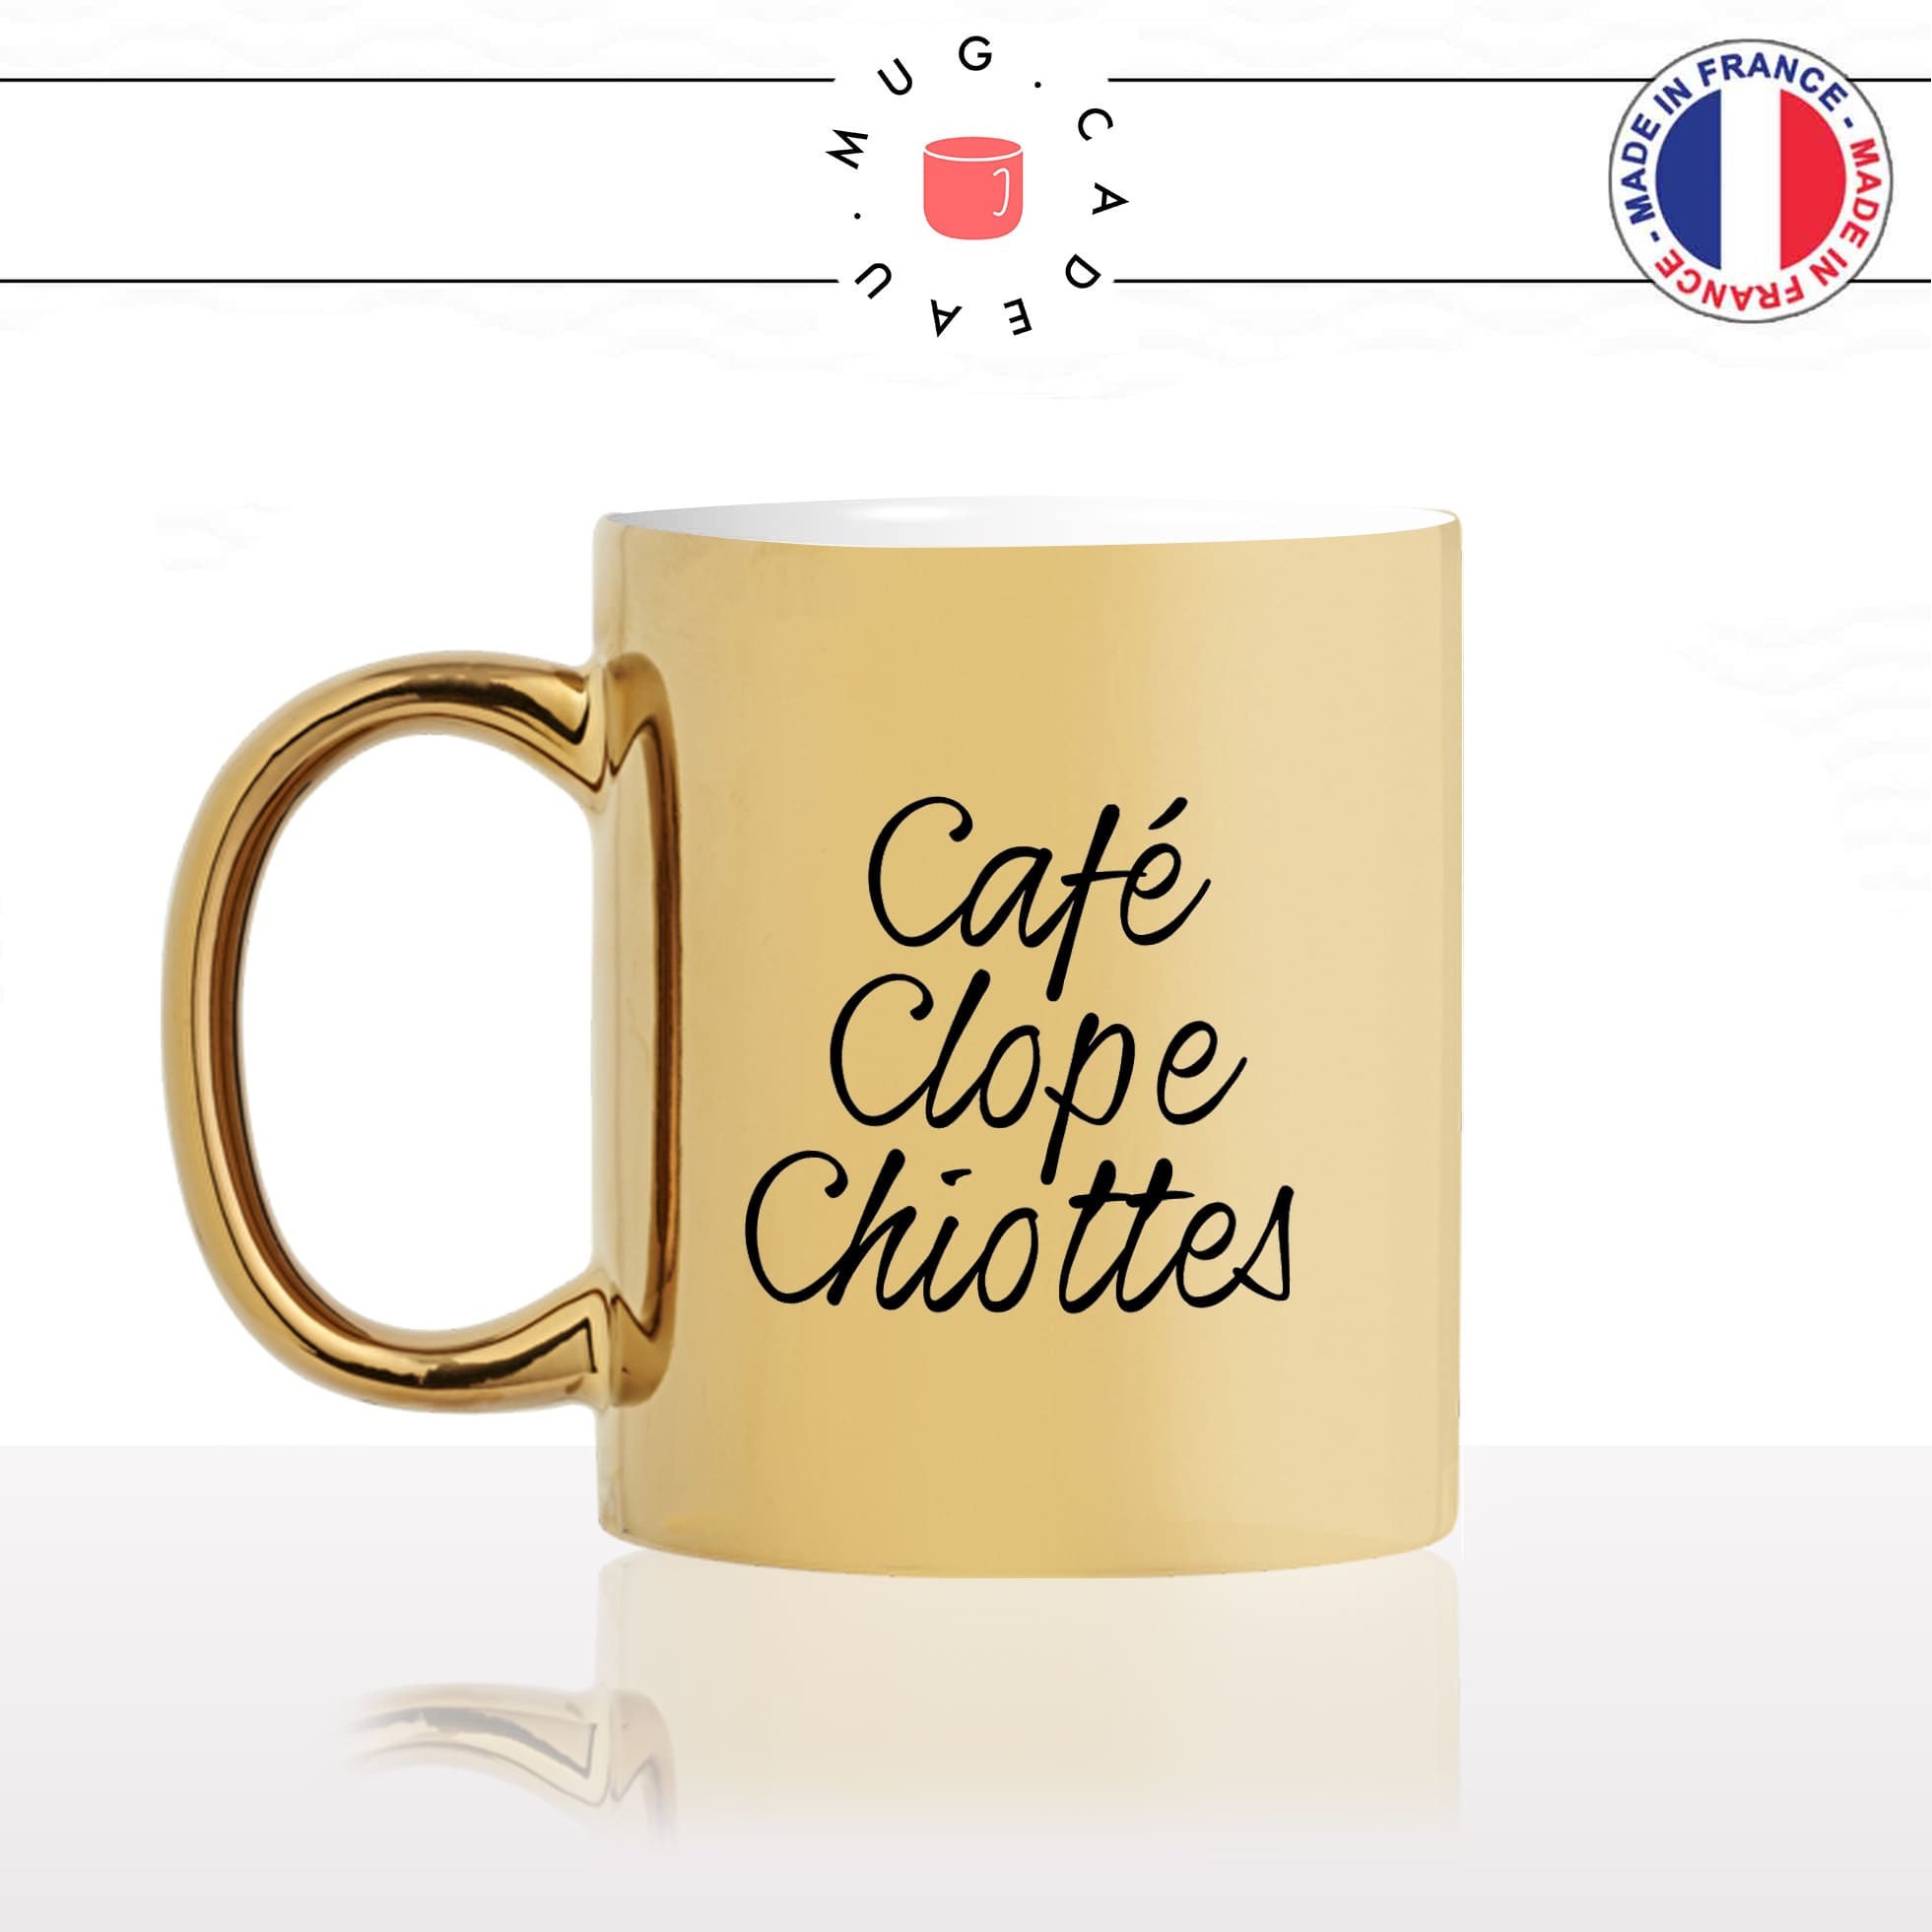 mug-tasse-or-doré-gold-unique-cafe-clope-chiottes-cloppe-cigarette-fumeur-matin-reveil-homme-femme-humour-fun-cool-idée-cadeau-original